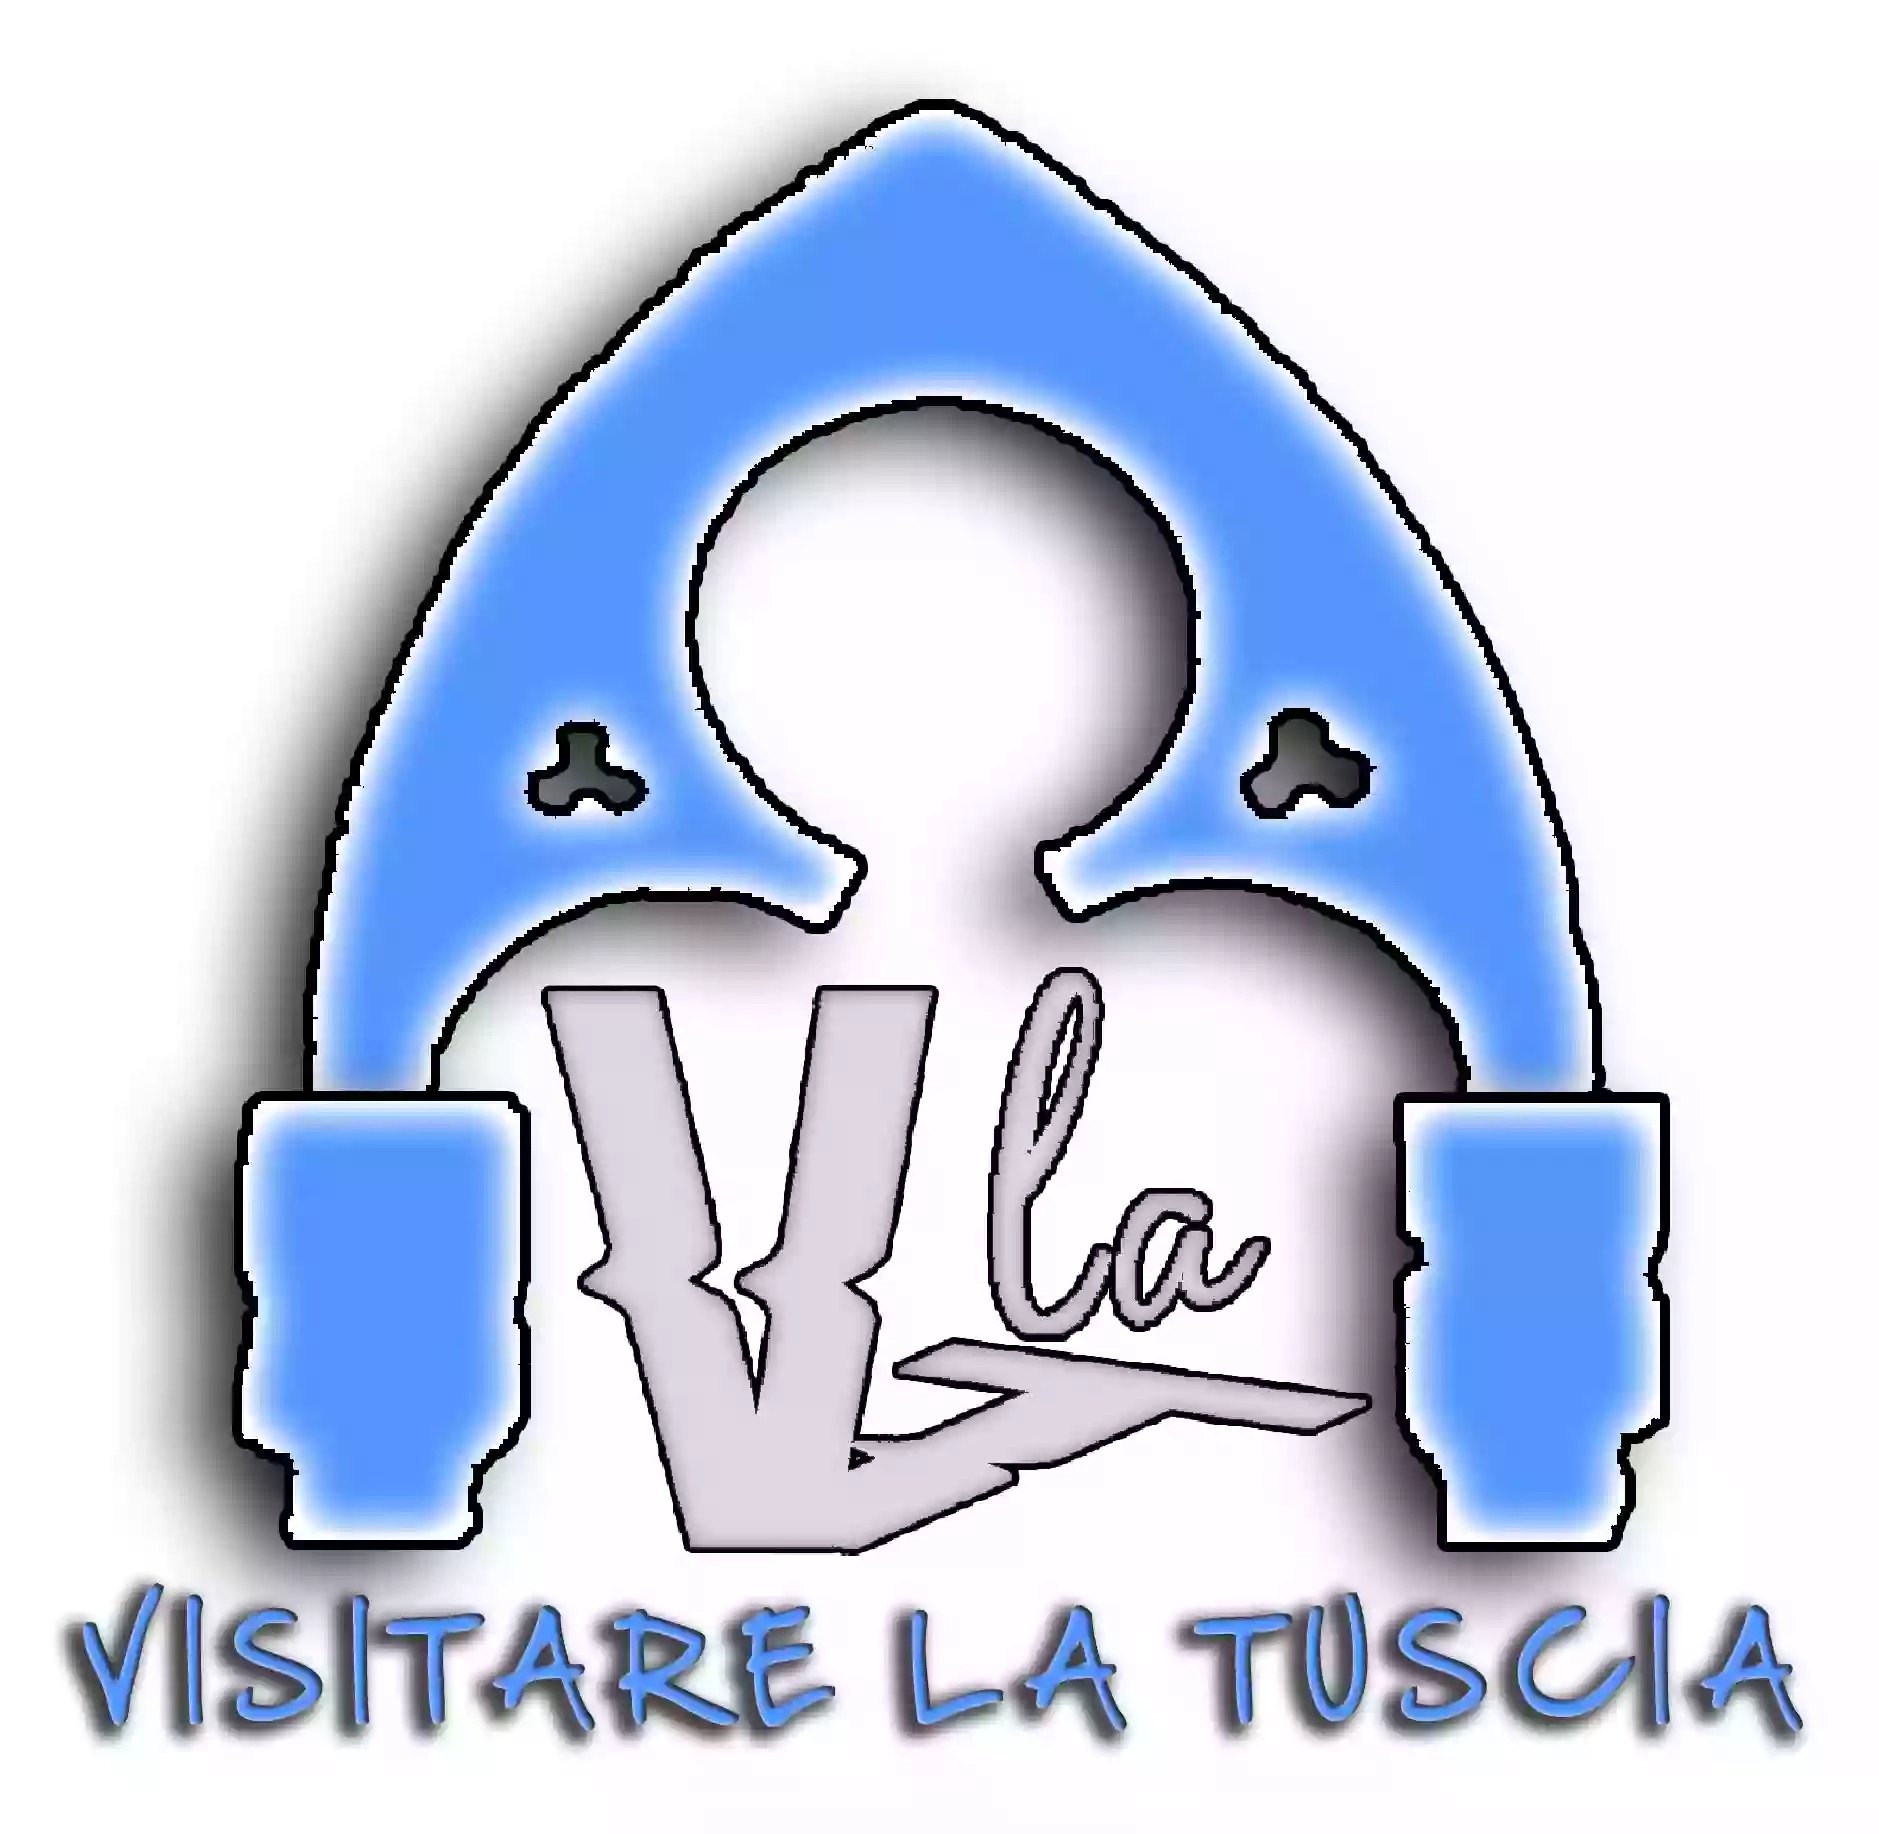 Visitare la Tuscia - guida turistica abilitata per Viterbo e Roma - Marco Zanardi